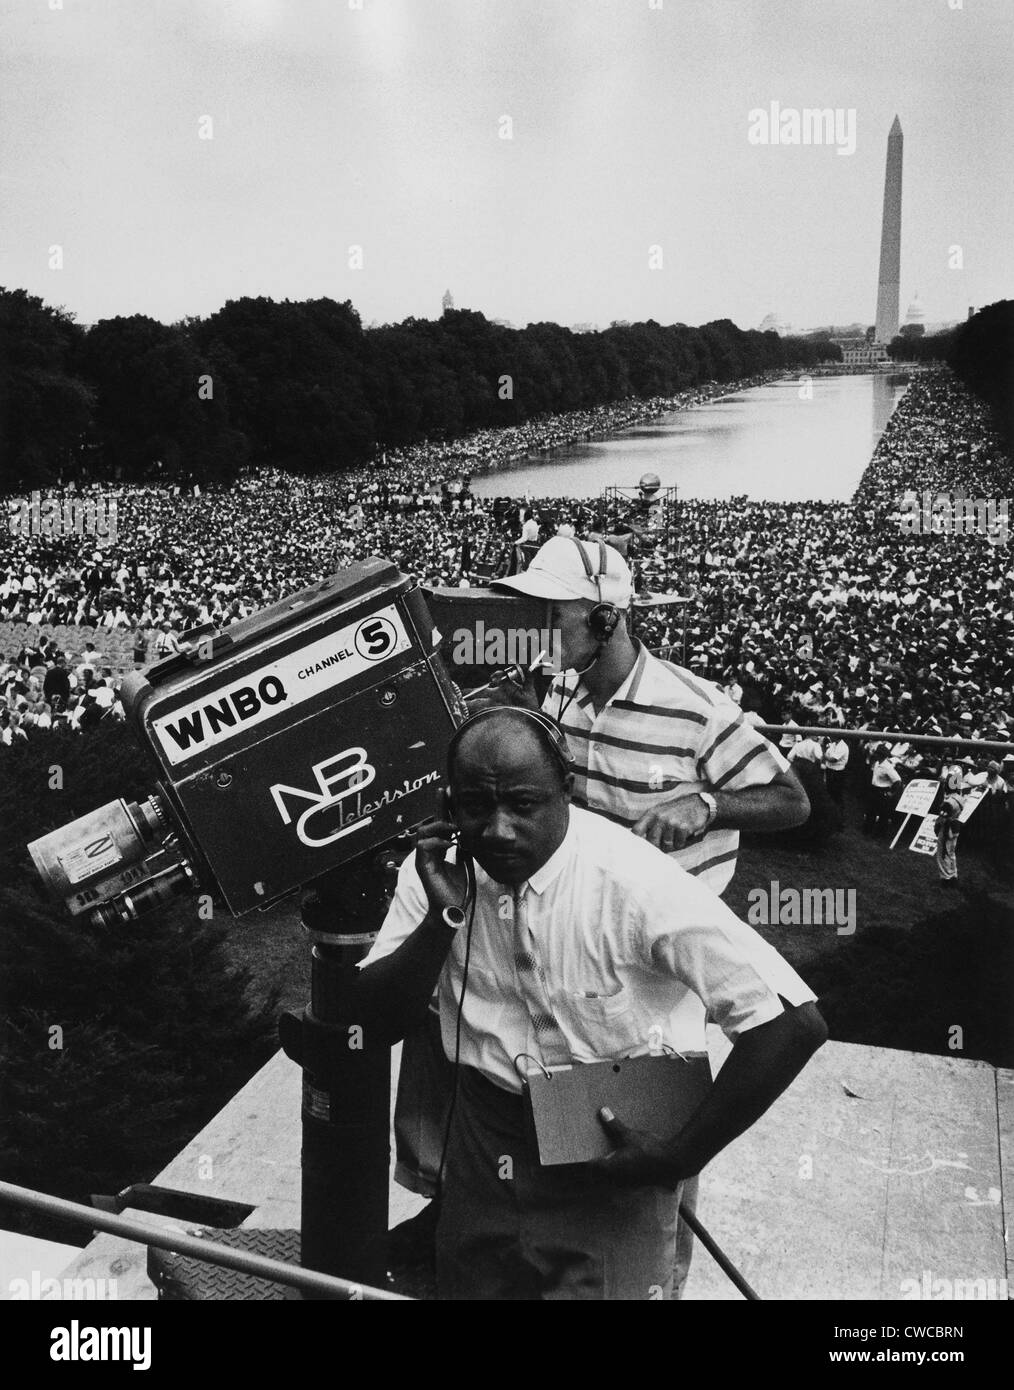 Mars 1963 sur l'État de Washington. Équipe de télévision NBC avec Washington Monument et foule en arrière-plan. Le 28 août, 1963 Banque D'Images